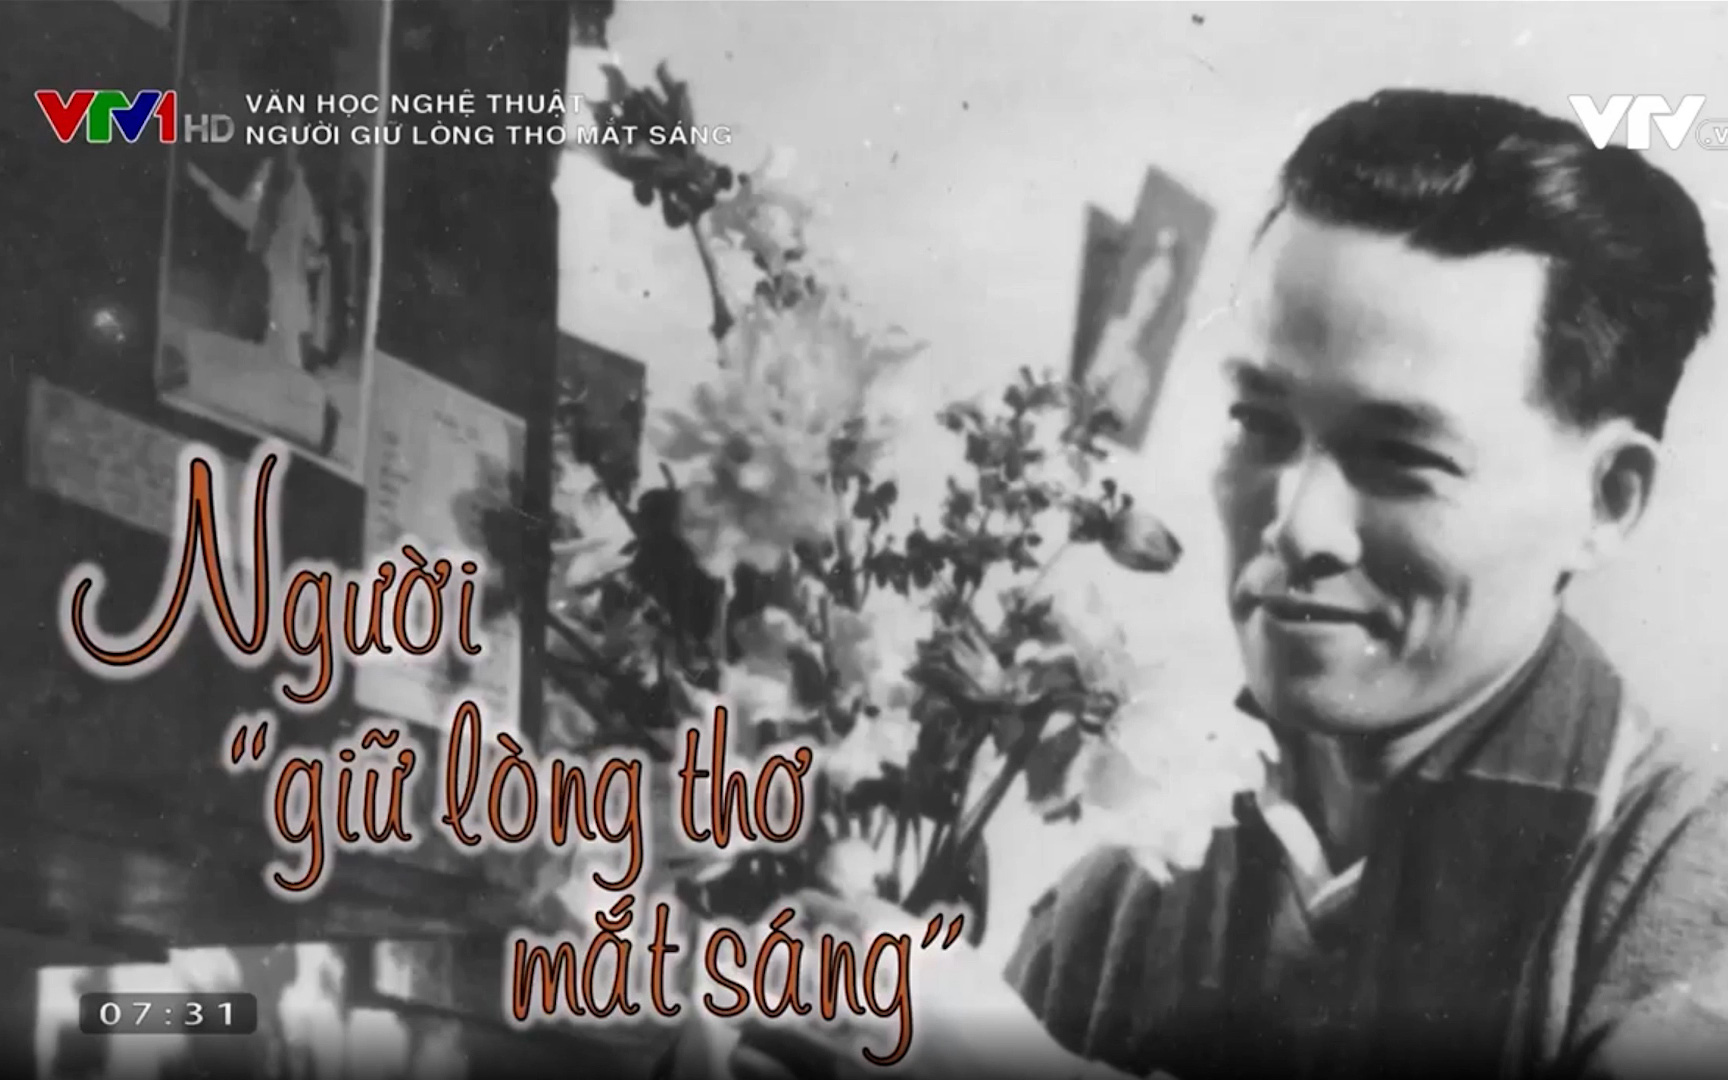 Phim kỷ niệm 100 năm ngày sinh nhà thơ, nhà viết kịch Lưu Quang Thuận: Giữ lòng thơ mắt sáng